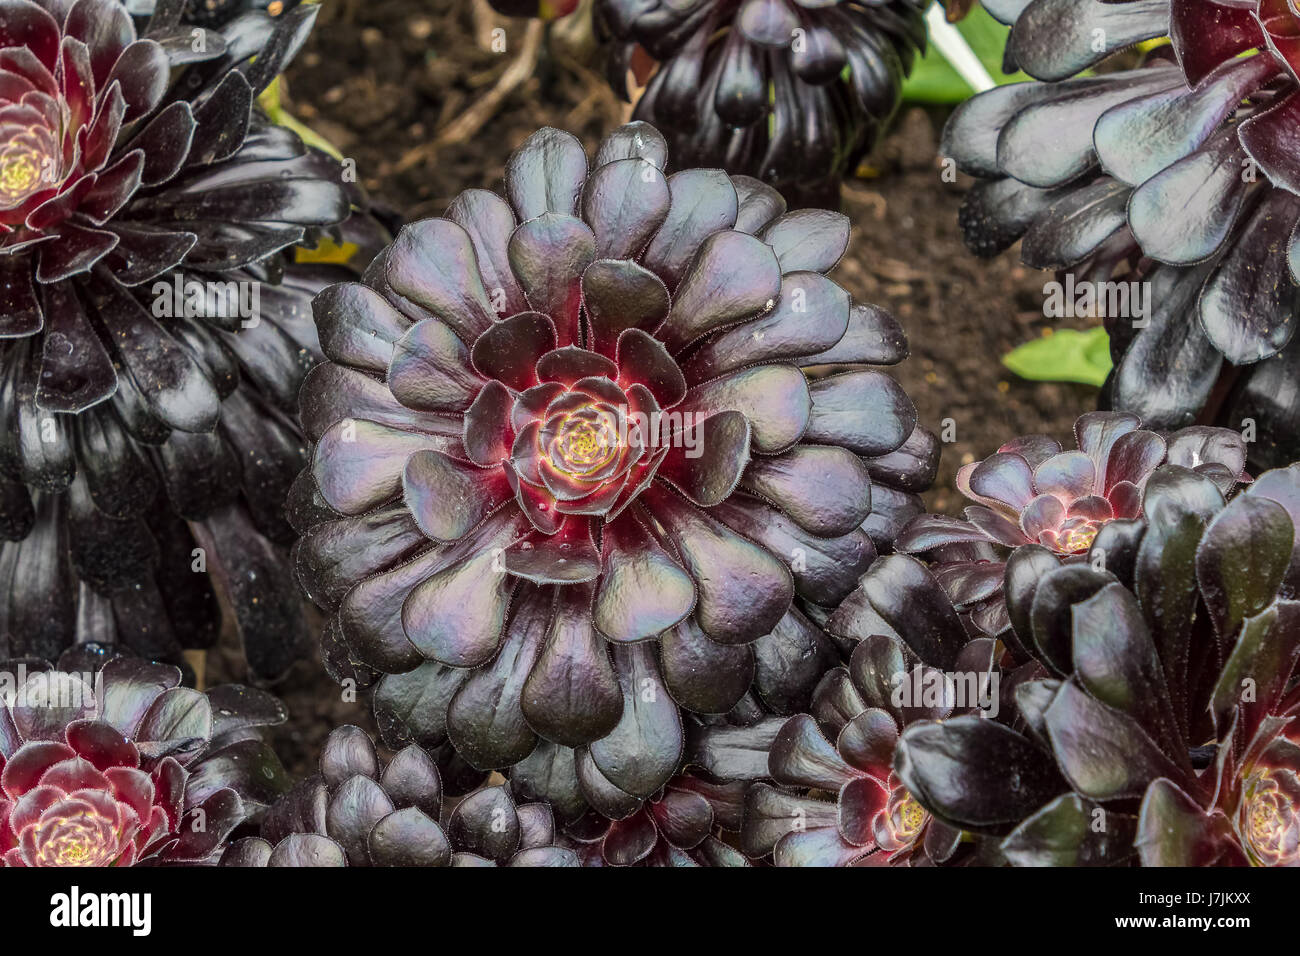 Aeonium Arboreum (Zwartkop), The flower has rosettes of burgundy-black ...